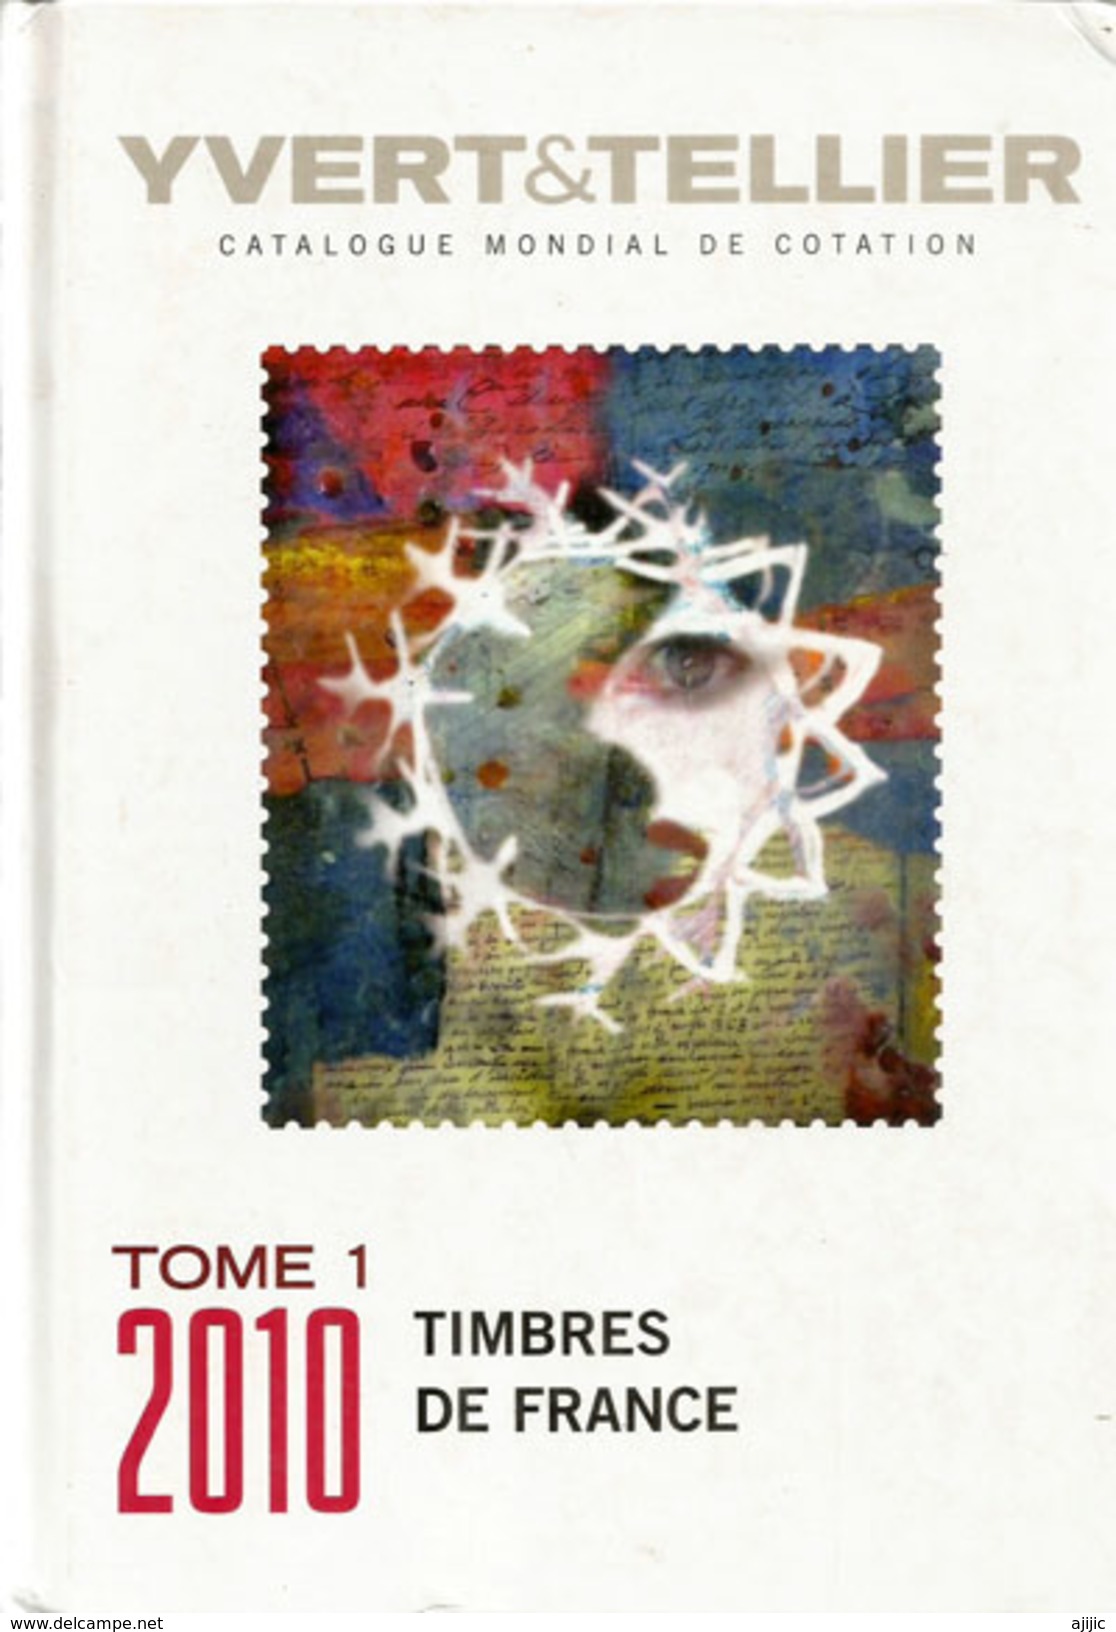 YVERT & TELLIER TOME 1 . 2010 Timbres De France. 880 Pages Couleurs, état Neuf - Frankrijk